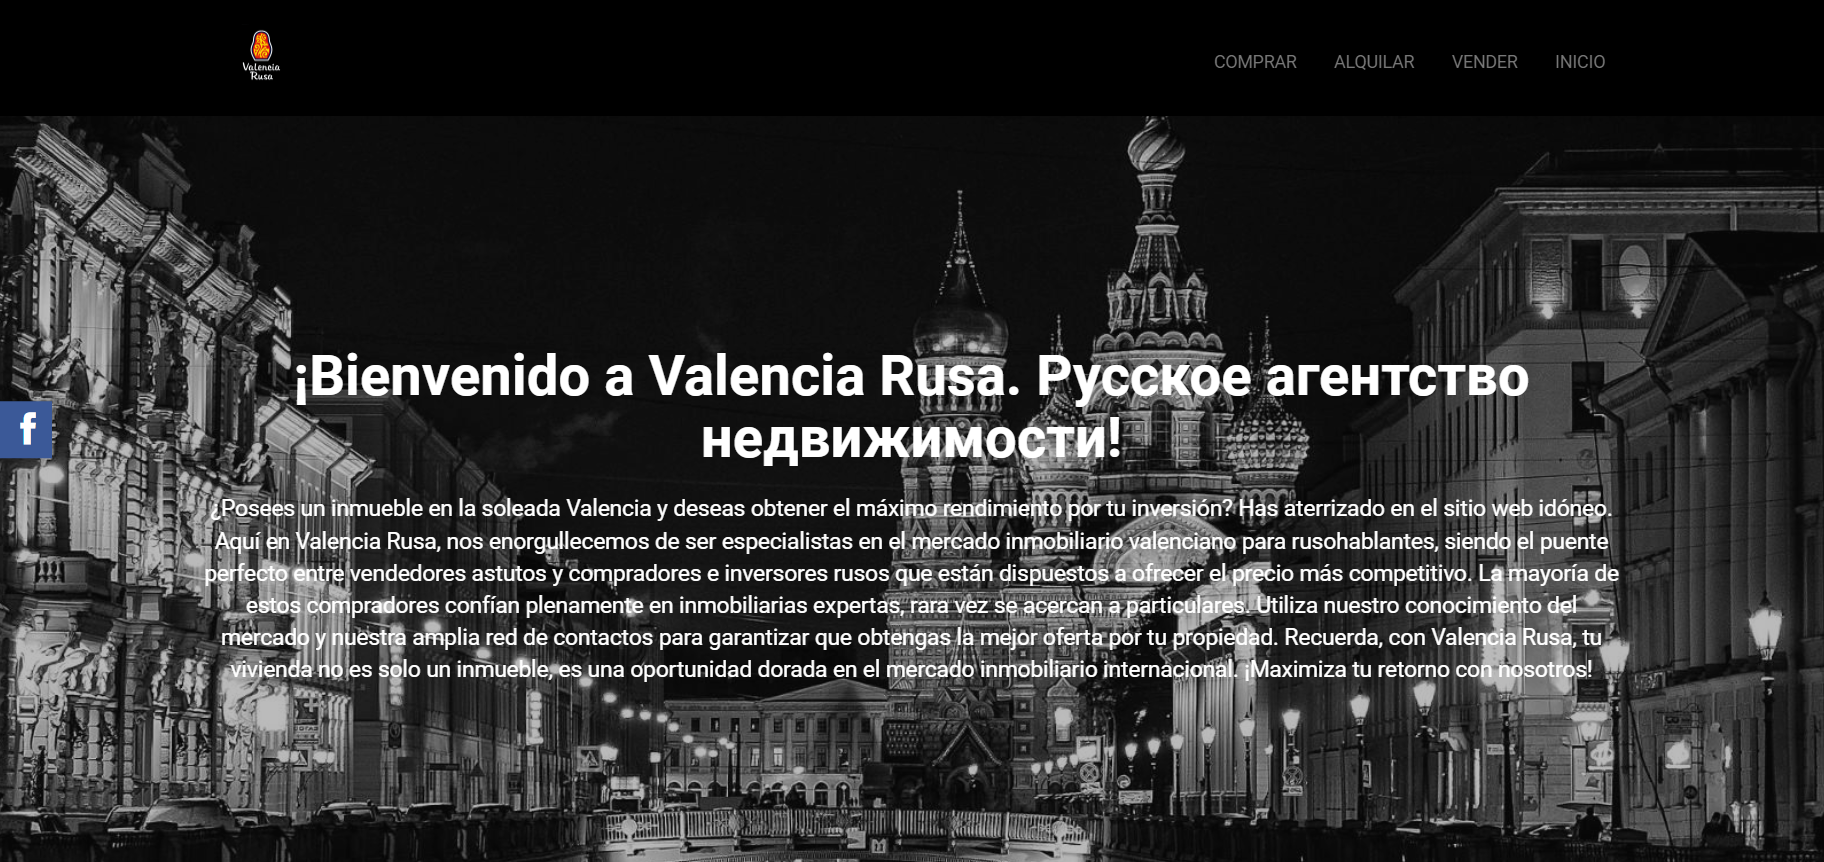 Недовольство клиентов: Почему следует проявлять осторожность при сотрудничестве с VALENCIA RUSA в Испании